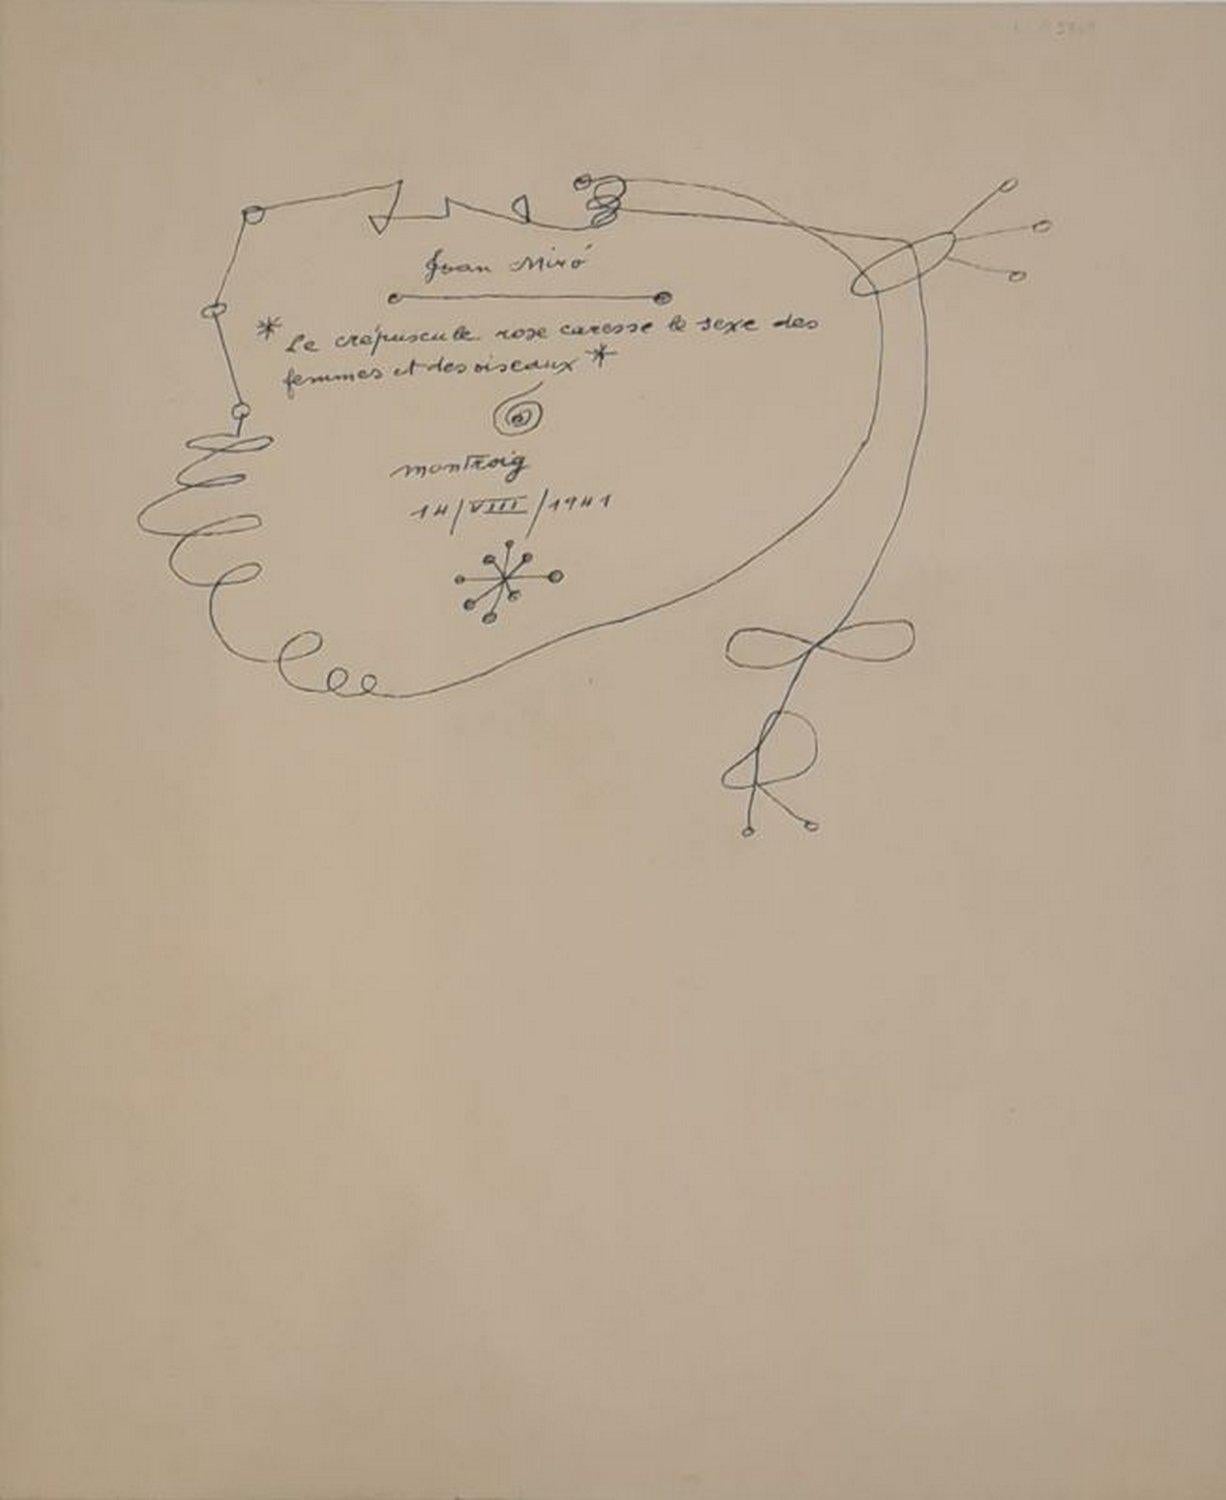 Le crépuscule rose caresse le sexe des femmes et des oiseaux  - Print by (after) Joan Miró